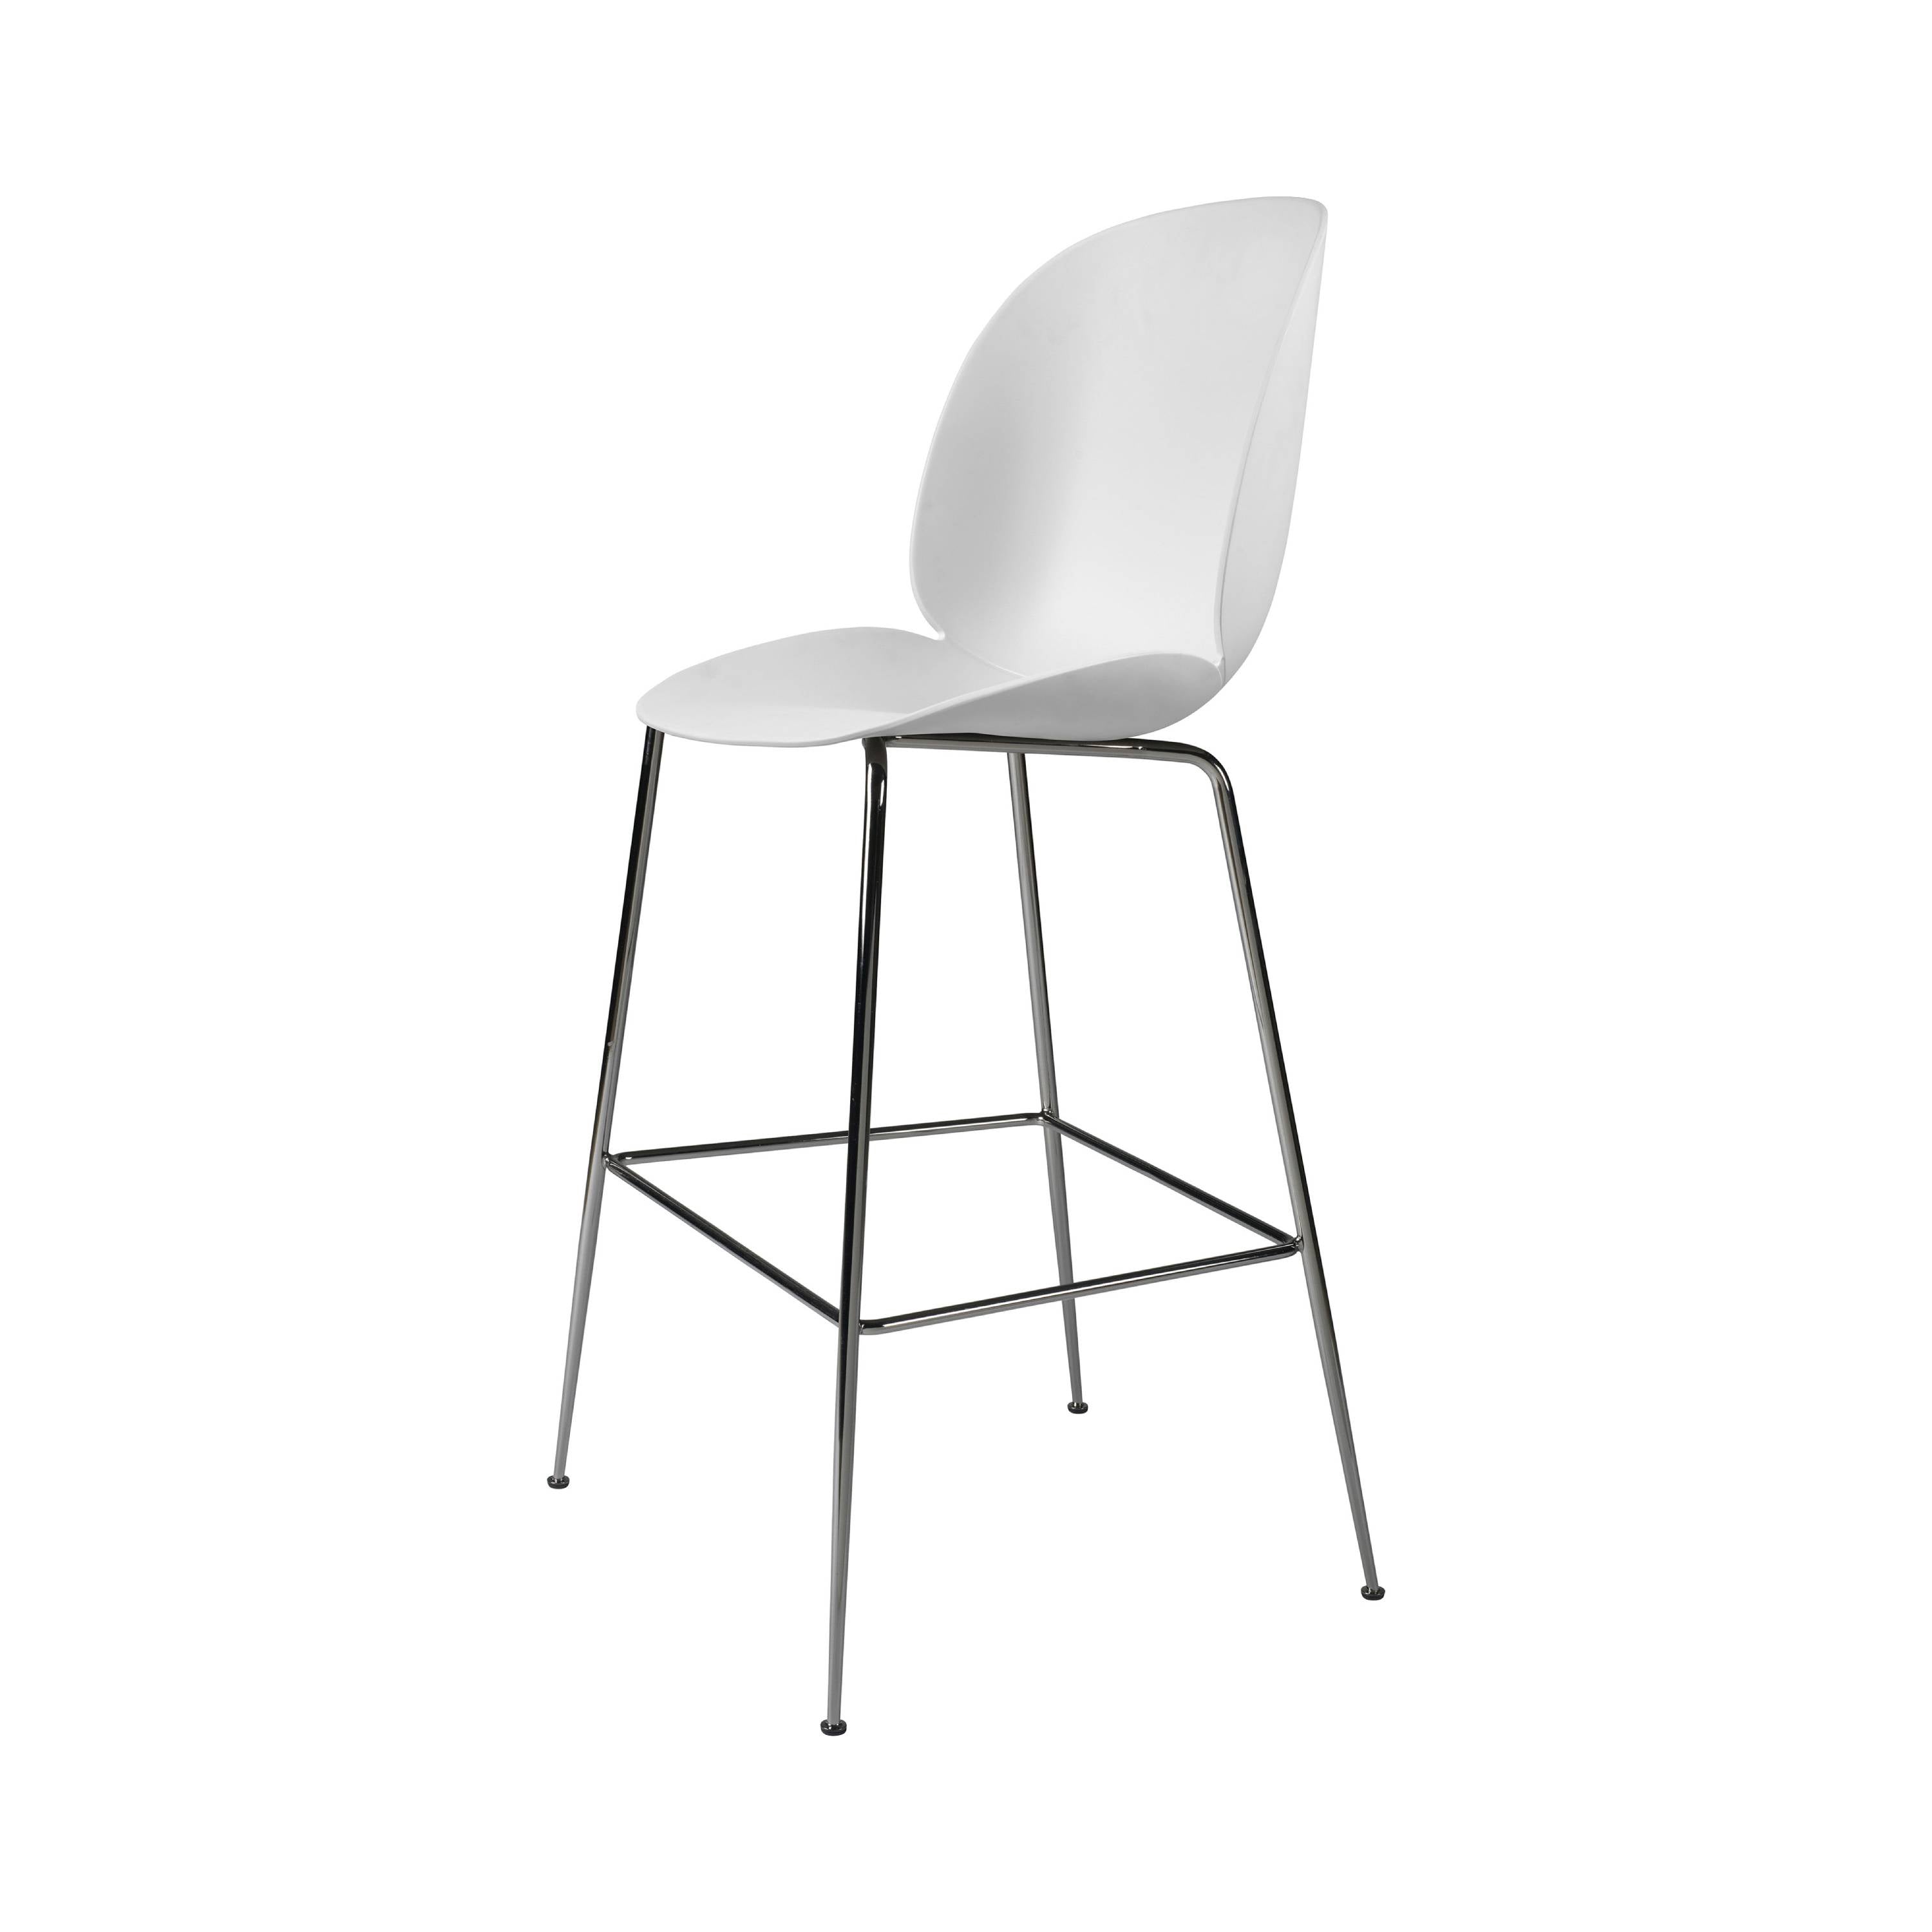 Beetle Bar + Counter Chair: Bar + Alabaster White + Black Chrome